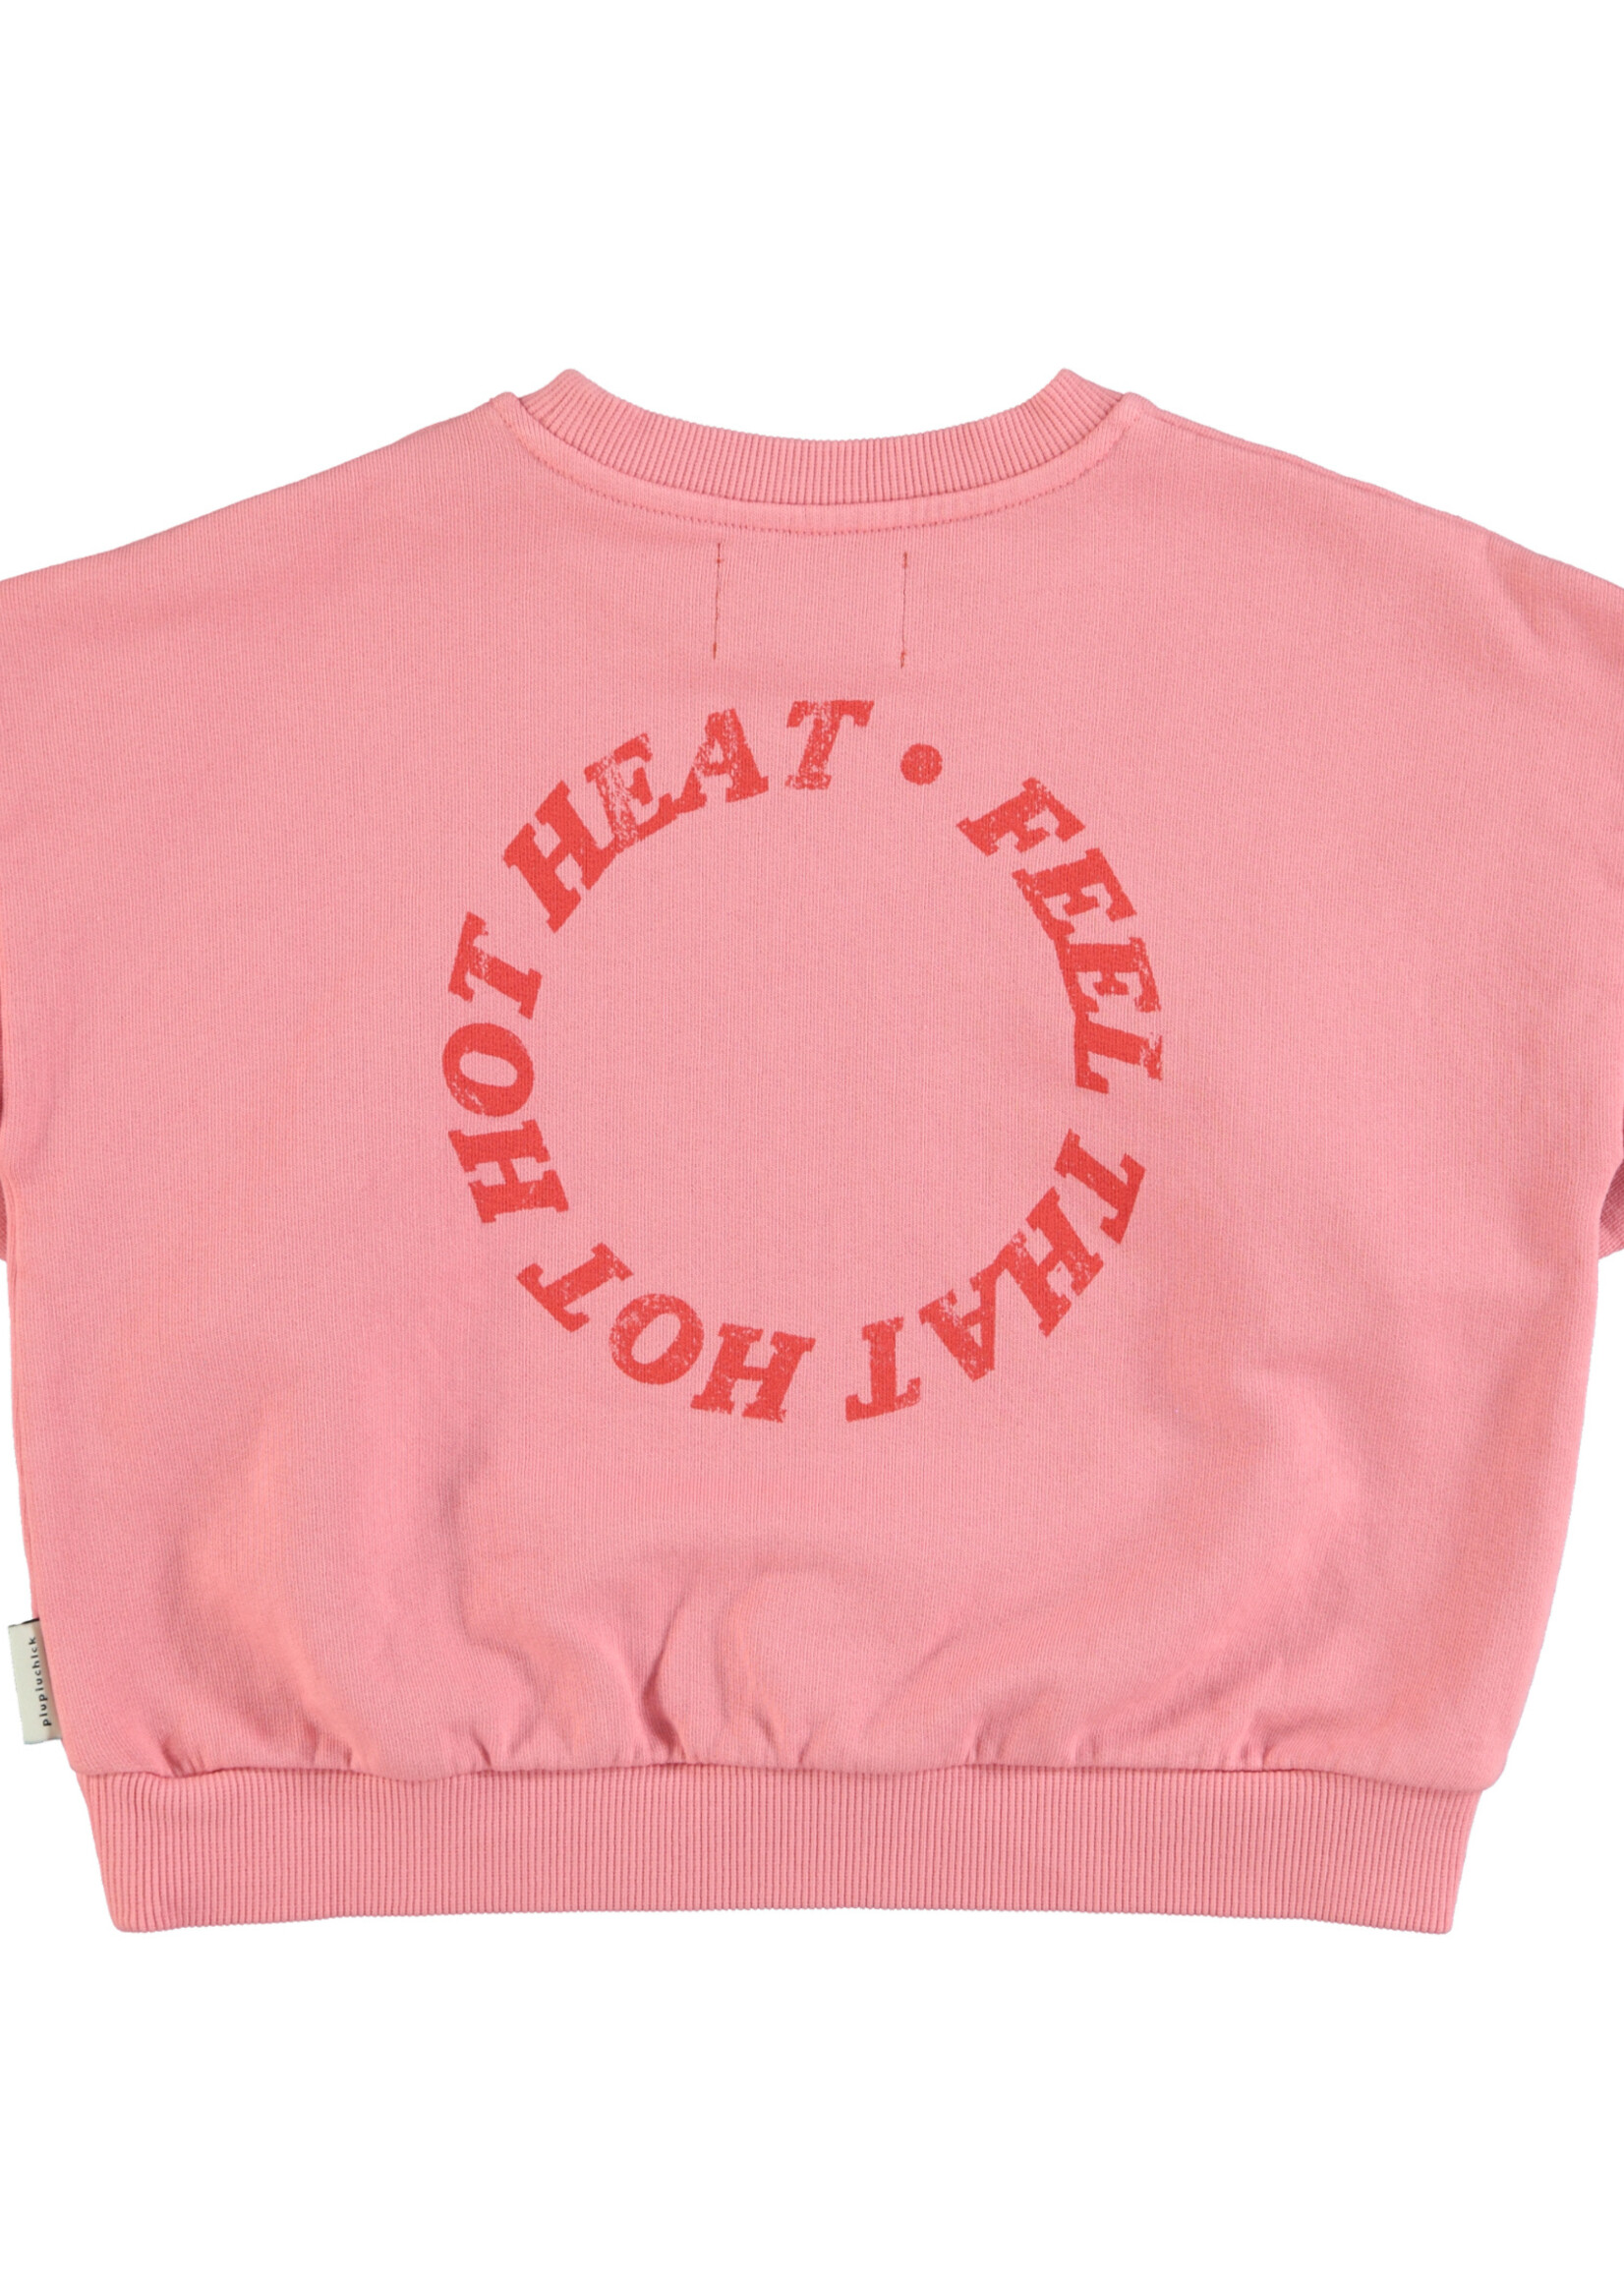 Piupiuchick Sweatshirt pink with heart print - Piupiuchick